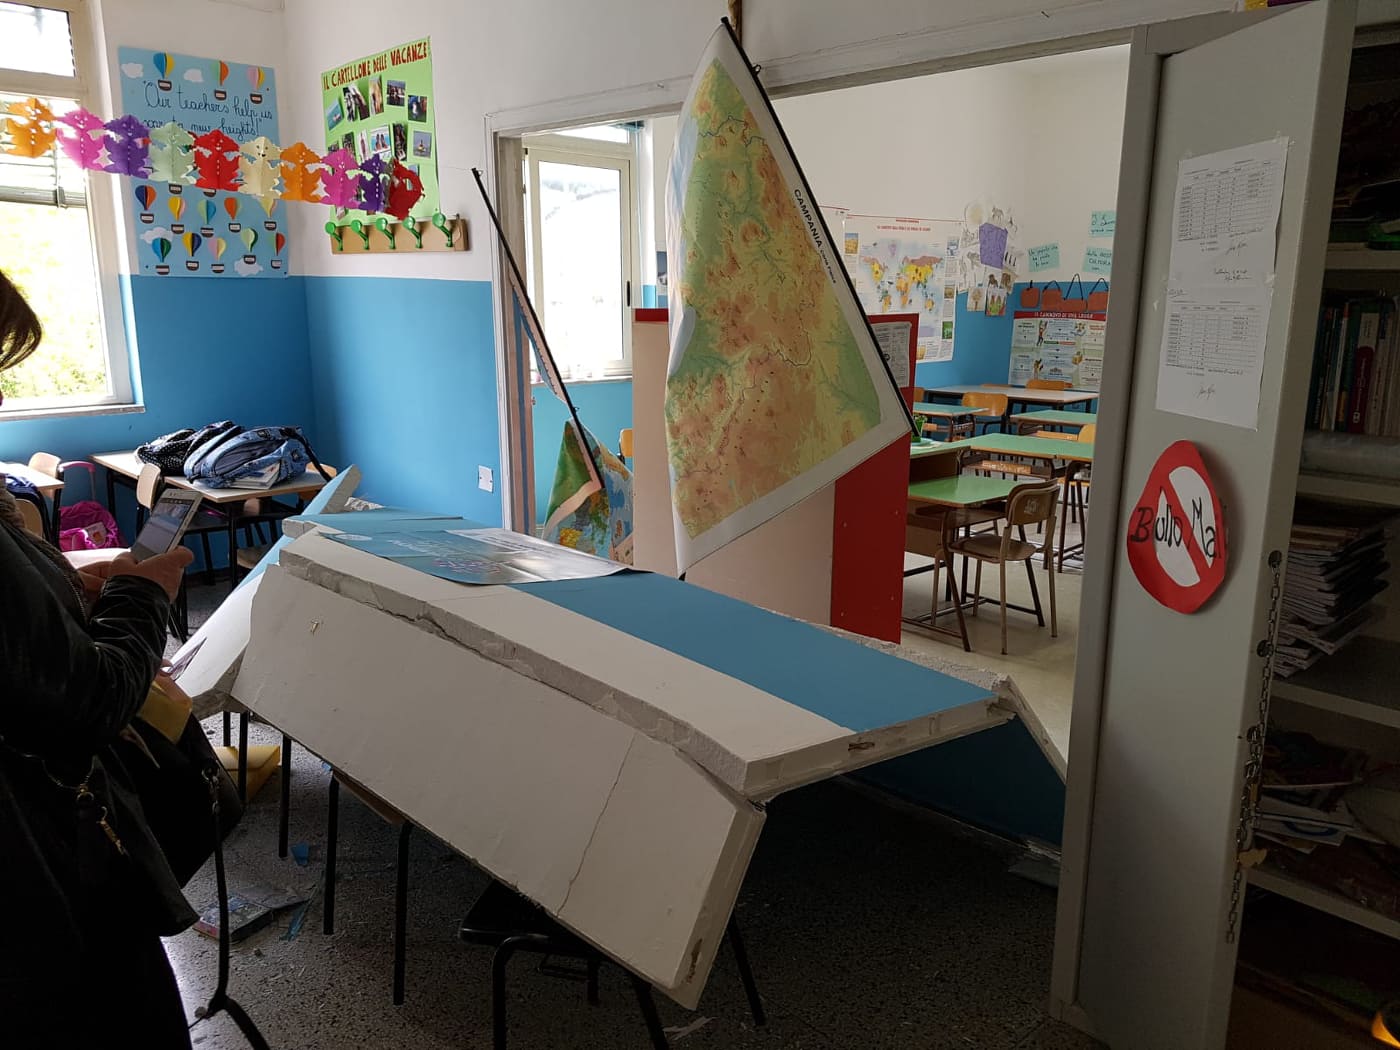 Sant’Anastasia, crolla parete in una scuola: feriti 5 bambini e maestra incinta